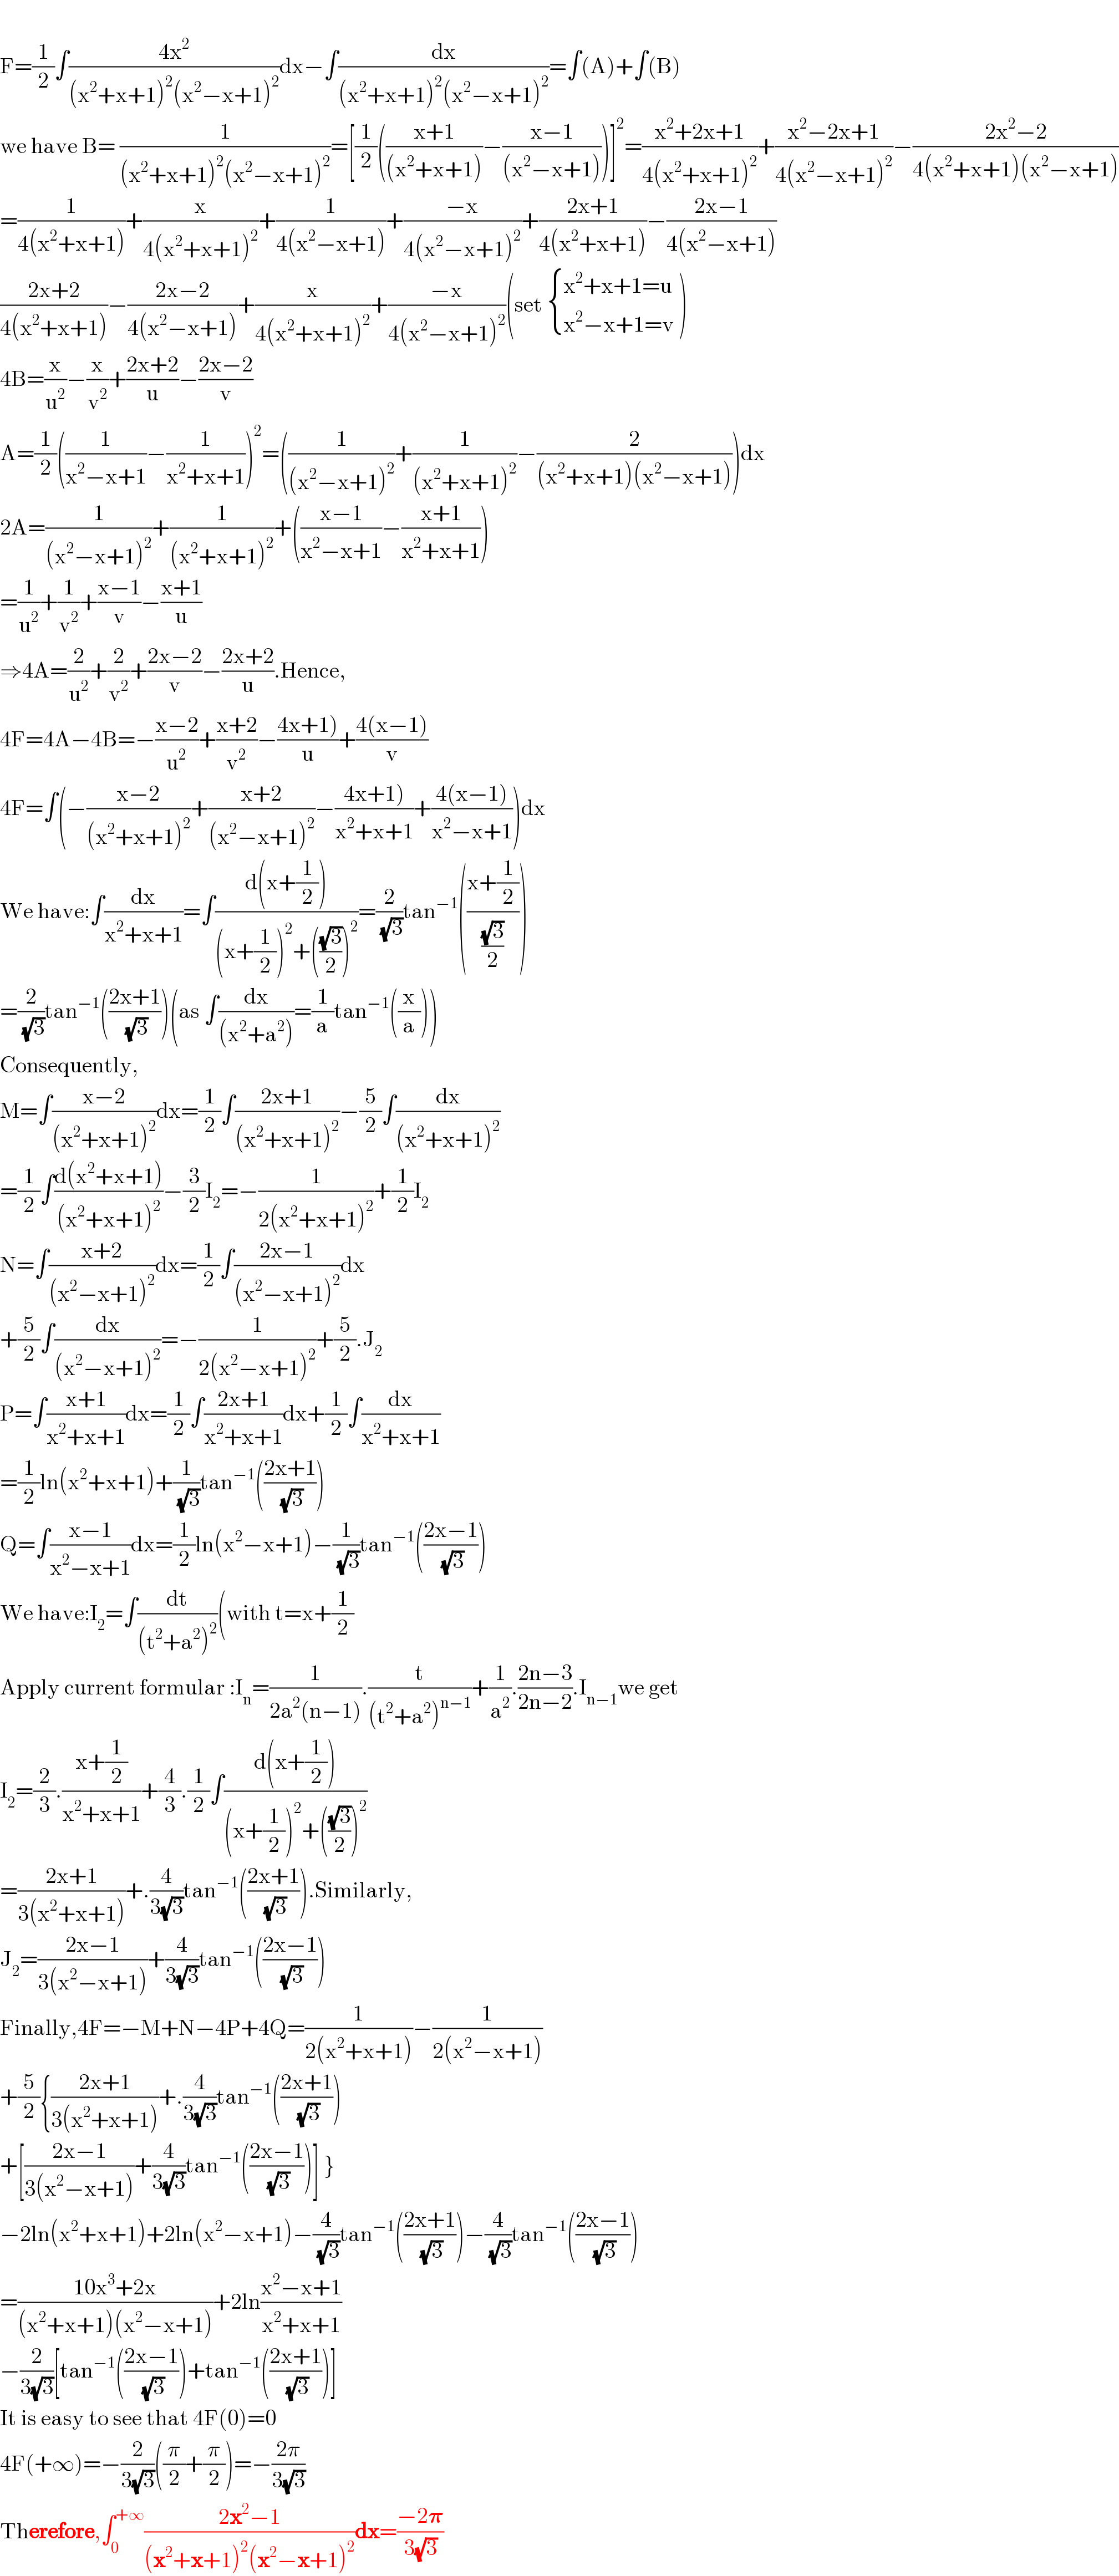   F=(1/2)∫((4x^2 )/((x^2 +x+1)^2 (x^2 −x+1)^2 ))dx−∫(dx/((x^2 +x+1)^2 (x^2 −x+1)^2 ))=∫(A)+∫(B)  we have B= (1/((x^2 +x+1)^2 (x^2 −x+1)^2 ))=[(1/2)(((x+1)/((x^2 +x+1)))−((x−1)/((x^2 −x+1))))]^2 =((x^2 +2x+1)/(4(x^2 +x+1)^2 ))+((x^2 −2x+1)/(4(x^2 −x+1)^2 ))−((2x^2 −2)/(4(x^2 +x+1)(x^2 −x+1)))  =(1/(4(x^2 +x+1)))+(x/(4(x^2 +x+1)^2 ))+(1/(4(x^2 −x+1)))+((−x)/(4(x^2 −x+1)^2 ))+((2x+1)/(4(x^2 +x+1)))−((2x−1)/(4(x^2 −x+1)))  ((2x+2)/(4(x^2 +x+1)))−((2x−2)/(4(x^2 −x+1)))+(x/(4(x^2 +x+1)^2 ))+((−x)/(4(x^2 −x+1)^2 ))(set  { ((x^2 +x+1=u)),((x^2 −x+1=v)) :} )  4B=(x/u^2 )−(x/v^2 )+((2x+2)/u)−((2x−2)/v)  A=(1/2)((1/(x^2 −x+1))−(1/(x^2 +x+1)))^2 =((1/((x^2 −x+1)^2 ))+(1/((x^2 +x+1)^2 ))−(2/((x^2 +x+1)(x^2 −x+1))))dx  2A=(1/((x^2 −x+1)^2 ))+(1/((x^2 +x+1)^2 ))+(((x−1)/(x^2 −x+1))−((x+1)/(x^2 +x+1)))  =(1/u^2 )+(1/v^2 )+((x−1)/v)−((x+1)/u)  ⇒4A=(2/u^2 )+(2/v^2 )+((2x−2)/v)−((2x+2)/u).Hence,  4F=4A−4B=−((x−2)/u^2 )+((x+2)/v^2 )−((4x+1))/u)+((4(x−1))/v)  4F=∫(−((x−2)/((x^2 +x+1)^2 ))+((x+2)/((x^2 −x+1)^2 ))−((4x+1))/(x^2 +x+1))+((4(x−1))/(x^2 −x+1)))dx  We have:∫(dx/(x^2 +x+1))=∫((d(x+(1/2)))/((x+(1/2))^2 +(((√3)/2))^2 ))=(2/(√3))tan^(−1) (((x+(1/2))/((√3)/2)))  =(2/(√3))tan^(−1) (((2x+1)/(√3)))(as ∫(dx/((x^2 +a^2 )))=(1/a)tan^(−1) ((x/a)))  Consequently,  M=∫((x−2)/((x^2 +x+1)^2 ))dx=(1/2)∫((2x+1)/((x^2 +x+1)^2 ))−(5/2)∫(dx/((x^2 +x+1)^2 ))  =(1/2)∫((d(x^2 +x+1))/((x^2 +x+1)^2 ))−(3/2)I_2 =−(1/(2(x^2 +x+1)^2 ))+(1/2)I_2   N=∫((x+2)/((x^2 −x+1)^2 ))dx=(1/2)∫((2x−1)/((x^2 −x+1)^2 ))dx  +(5/2)∫(dx/((x^2 −x+1)^2 ))=−(1/(2(x^2 −x+1)^2 ))+(5/2).J_2   P=∫((x+1)/(x^2 +x+1))dx=(1/2)∫((2x+1)/(x^2 +x+1))dx+(1/2)∫(dx/(x^2 +x+1))  =(1/2)ln(x^2 +x+1)+(1/(√3))tan^(−1) (((2x+1)/(√3)))  Q=∫((x−1)/(x^2 −x+1))dx=(1/2)ln(x^2 −x+1)−(1/(√3))tan^(−1) (((2x−1)/(√3)))  We have:I_2 =∫(dt/((t^2 +a^2 )^2 ))(with t=x+(1/2)  Apply current formular :I_n =(1/(2a^2 (n−1))).(t/((t^2 +a^2 )^(n−1) ))+(1/a^2 ).((2n−3)/(2n−2)).I_(n−1) we get  I_2 =(2/3).((x+(1/2))/(x^2 +x+1))+(4/3).(1/2)∫((d(x+(1/2)))/((x+(1/2))^2 +(((√3)/2))^2 ))  =((2x+1)/(3(x^2 +x+1)))+.(4/(3(√3)))tan^(−1) (((2x+1)/(√3))).Similarly,  J_2 =((2x−1)/(3(x^2 −x+1)))+(4/(3(√3)))tan^(−1) (((2x−1)/(√3)))  Finally,4F=−M+N−4P+4Q=(1/(2(x^2 +x+1)))−(1/(2(x^2 −x+1)))  +(5/2){((2x+1)/(3(x^2 +x+1)))+.(4/(3(√3)))tan^(−1) (((2x+1)/(√3)))  +[((2x−1)/(3(x^2 −x+1)))+(4/(3(√3)))tan^(−1) (((2x−1)/(√3)))] }  −2ln(x^2 +x+1)+2ln(x^2 −x+1)−(4/(√3))tan^(−1) (((2x+1)/(√3)))−(4/(√3))tan^(−1) (((2x−1)/(√3)))  =((10x^3 +2x)/((x^2 +x+1)(x^2 −x+1)))+2ln((x^2 −x+1)/(x^2 +x+1))  −(2/(3(√3)))[tan^(−1) (((2x−1)/(√3)))+tan^(−1) (((2x+1)/(√3)))]  It is easy to see that 4F(0)=0  4F(+∞)=−(2/(3(√3)))((π/2)+(π/2))=−((2π)/(3(√3)))  Therefore,∫_0 ^(+∞) ((2x^2 −1)/((x^2 +x+1)^2 (x^2 −x+1)^2 ))dx=((−2𝛑)/(3(√3)))  